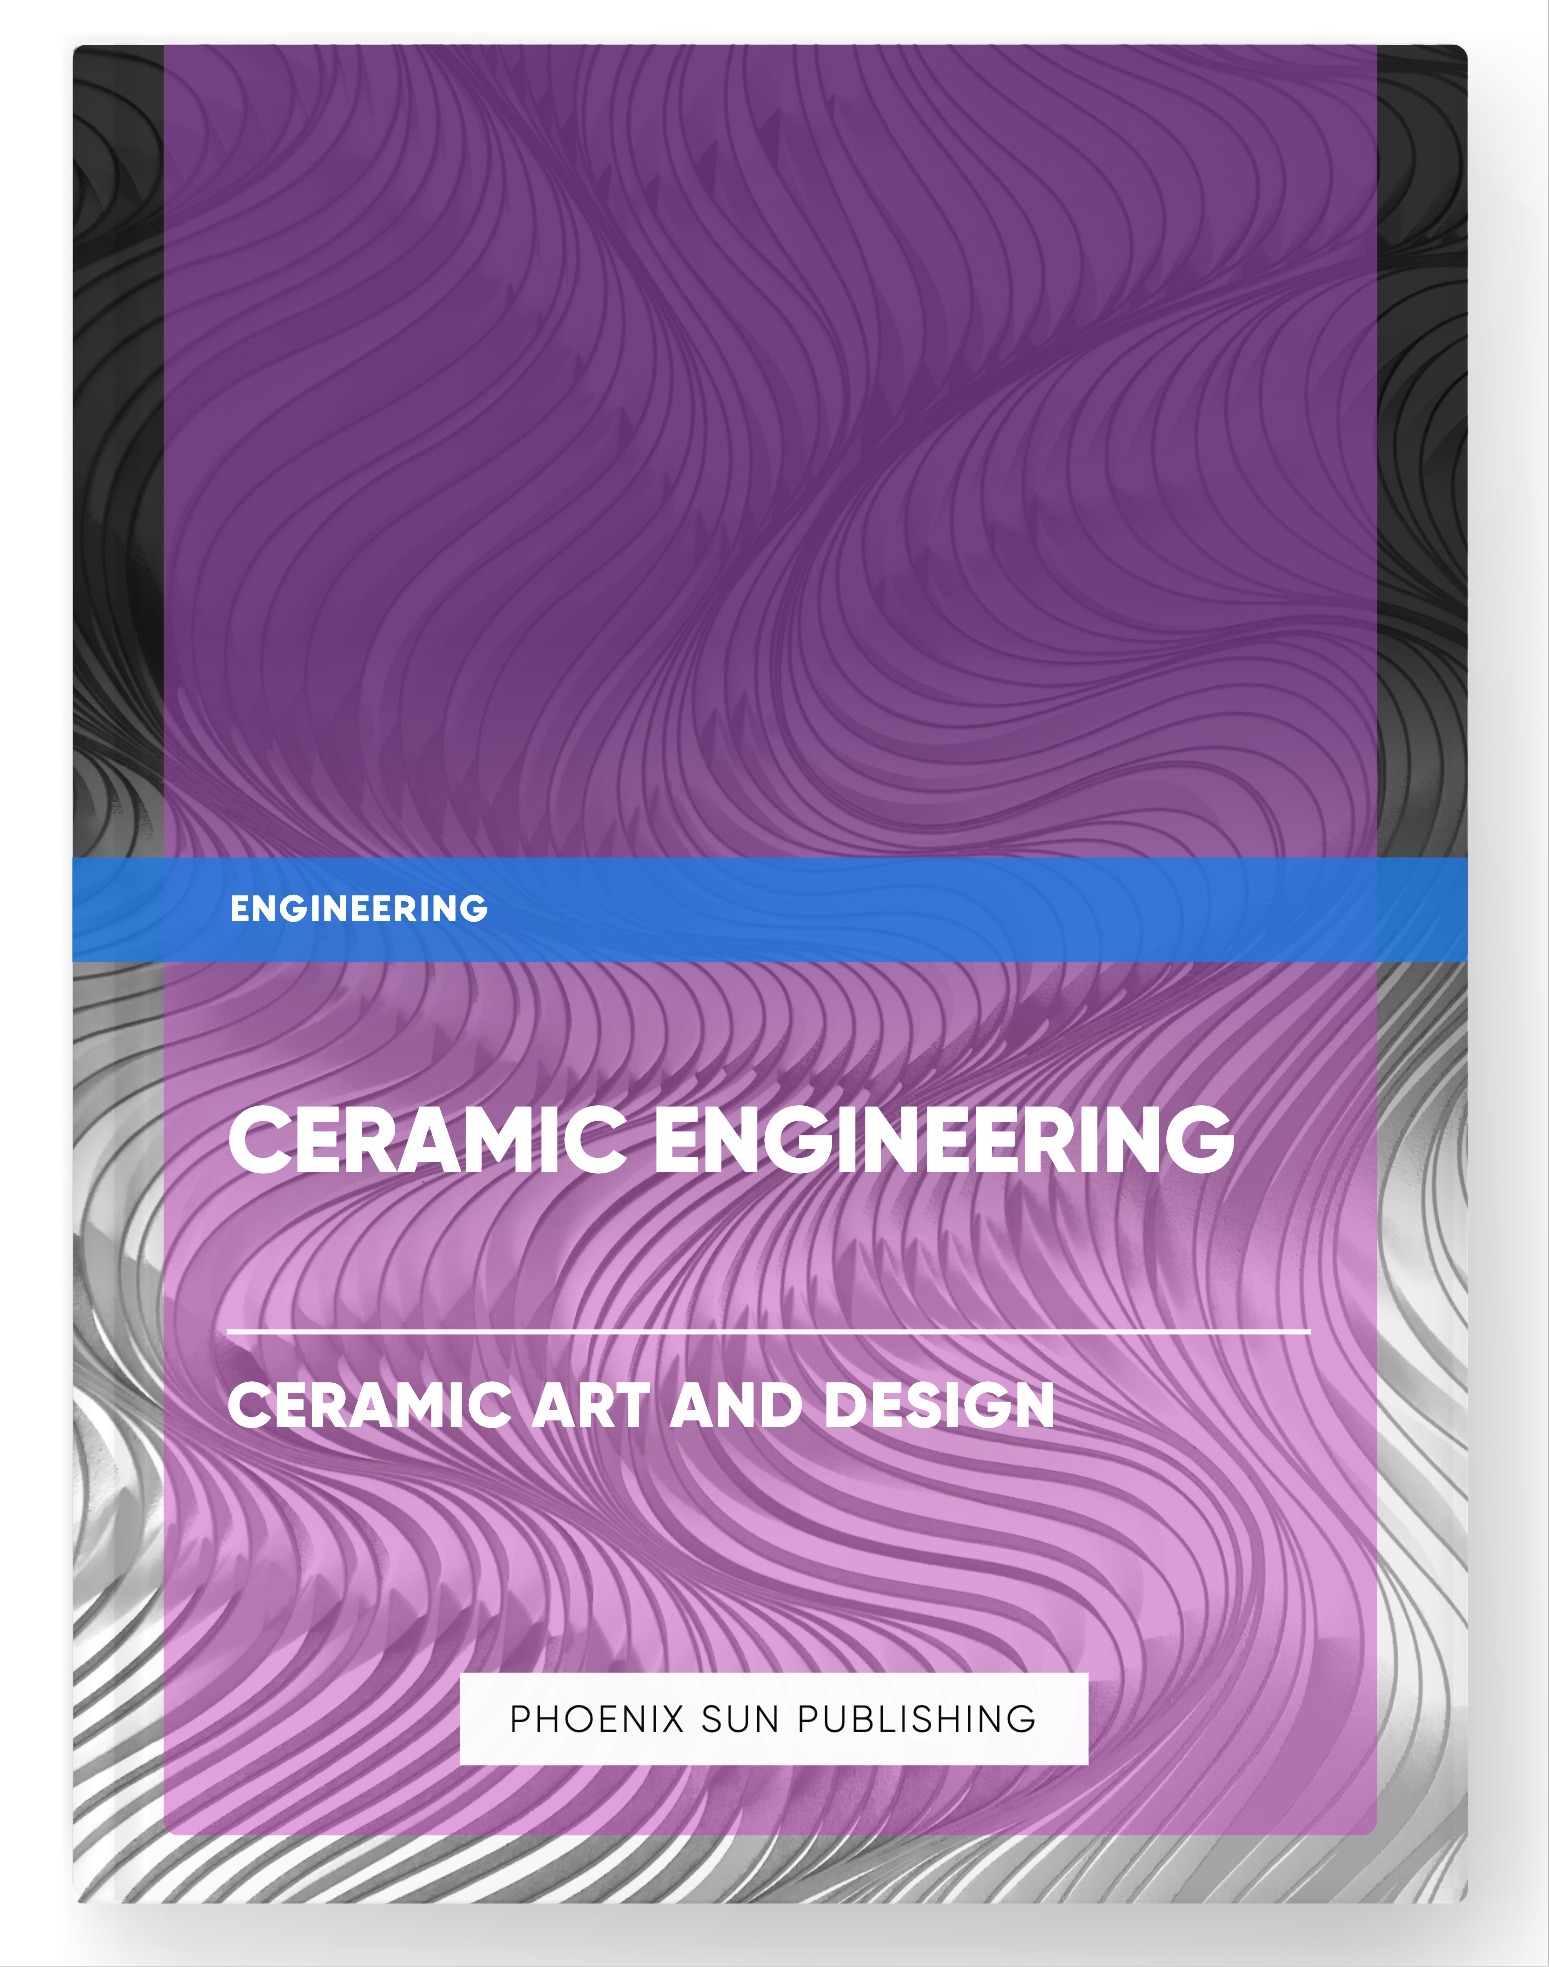 Ceramic Engineering – Ceramic Art and Design